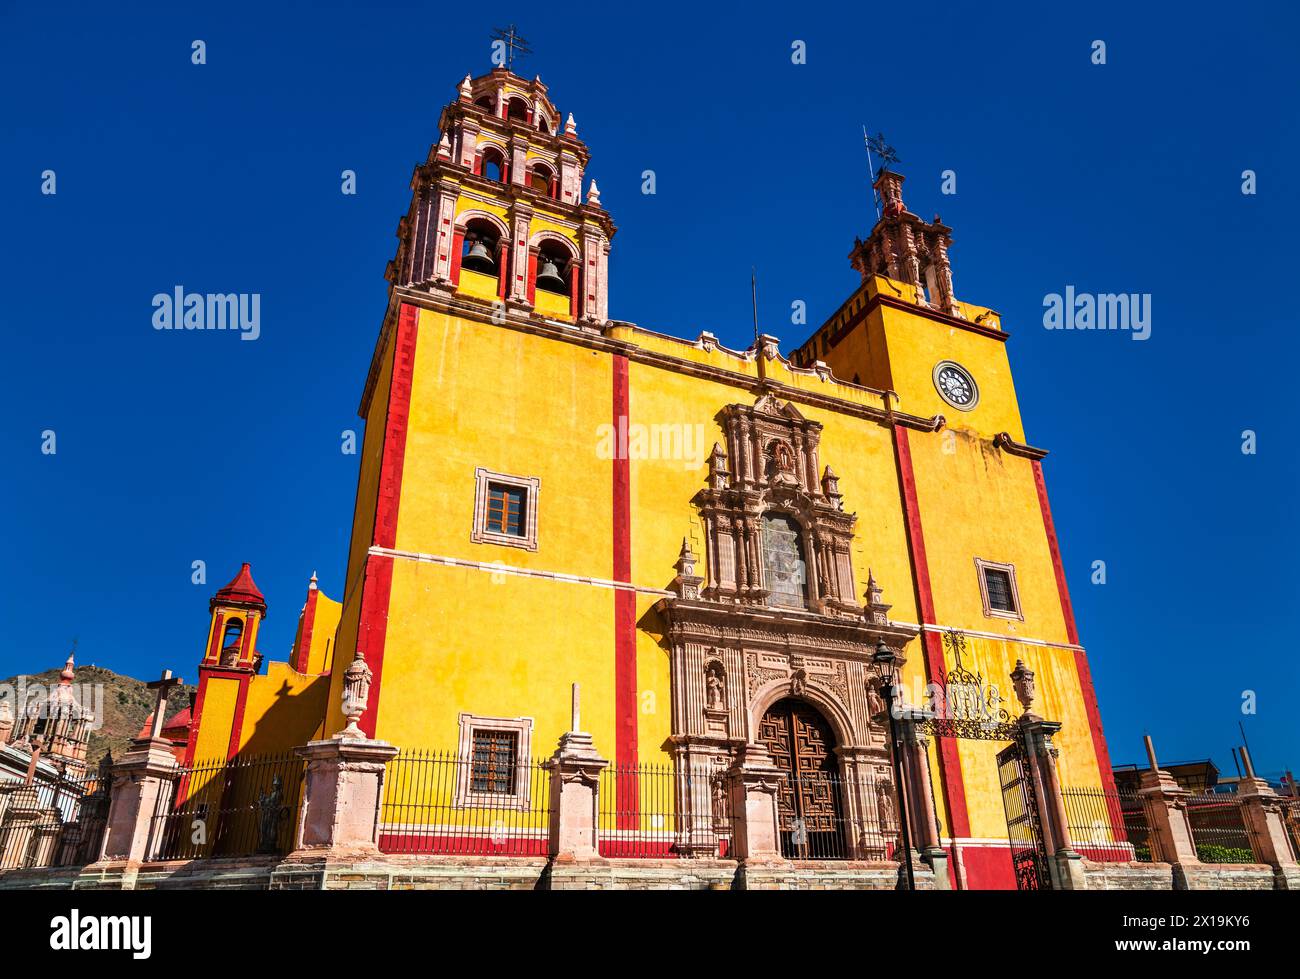 Collegiate Basilica of Our Lady of Guanajuato, UNESCO world heritage in Mexico Stock Photo